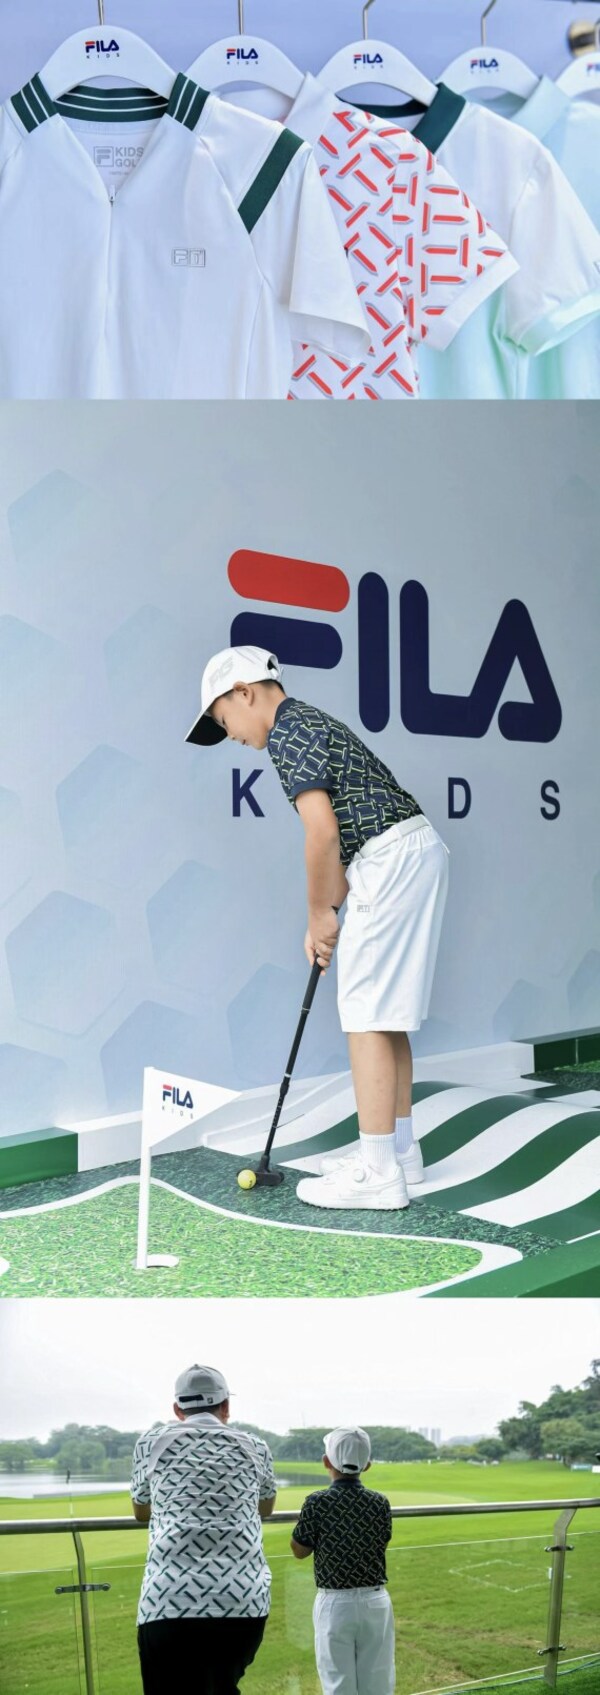 FILA KIDS已推出青少年高尔夫系列产品